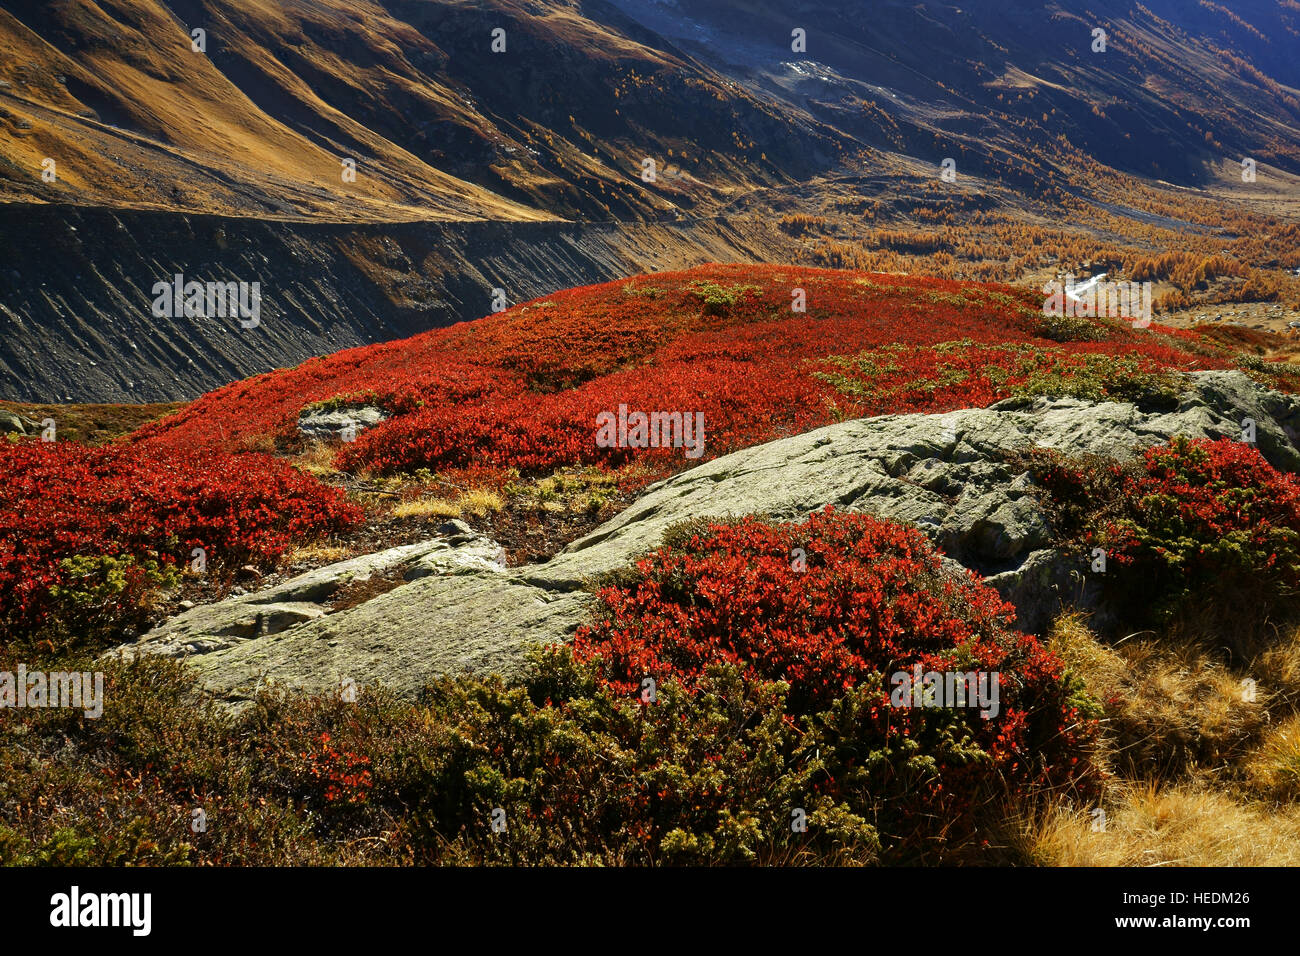 Couleurs d'automne sur la toundra alpine, rouge jaune les bleuets, mélèzes. Lötschental, alpes Suisse, Valais, Suisse Banque D'Images